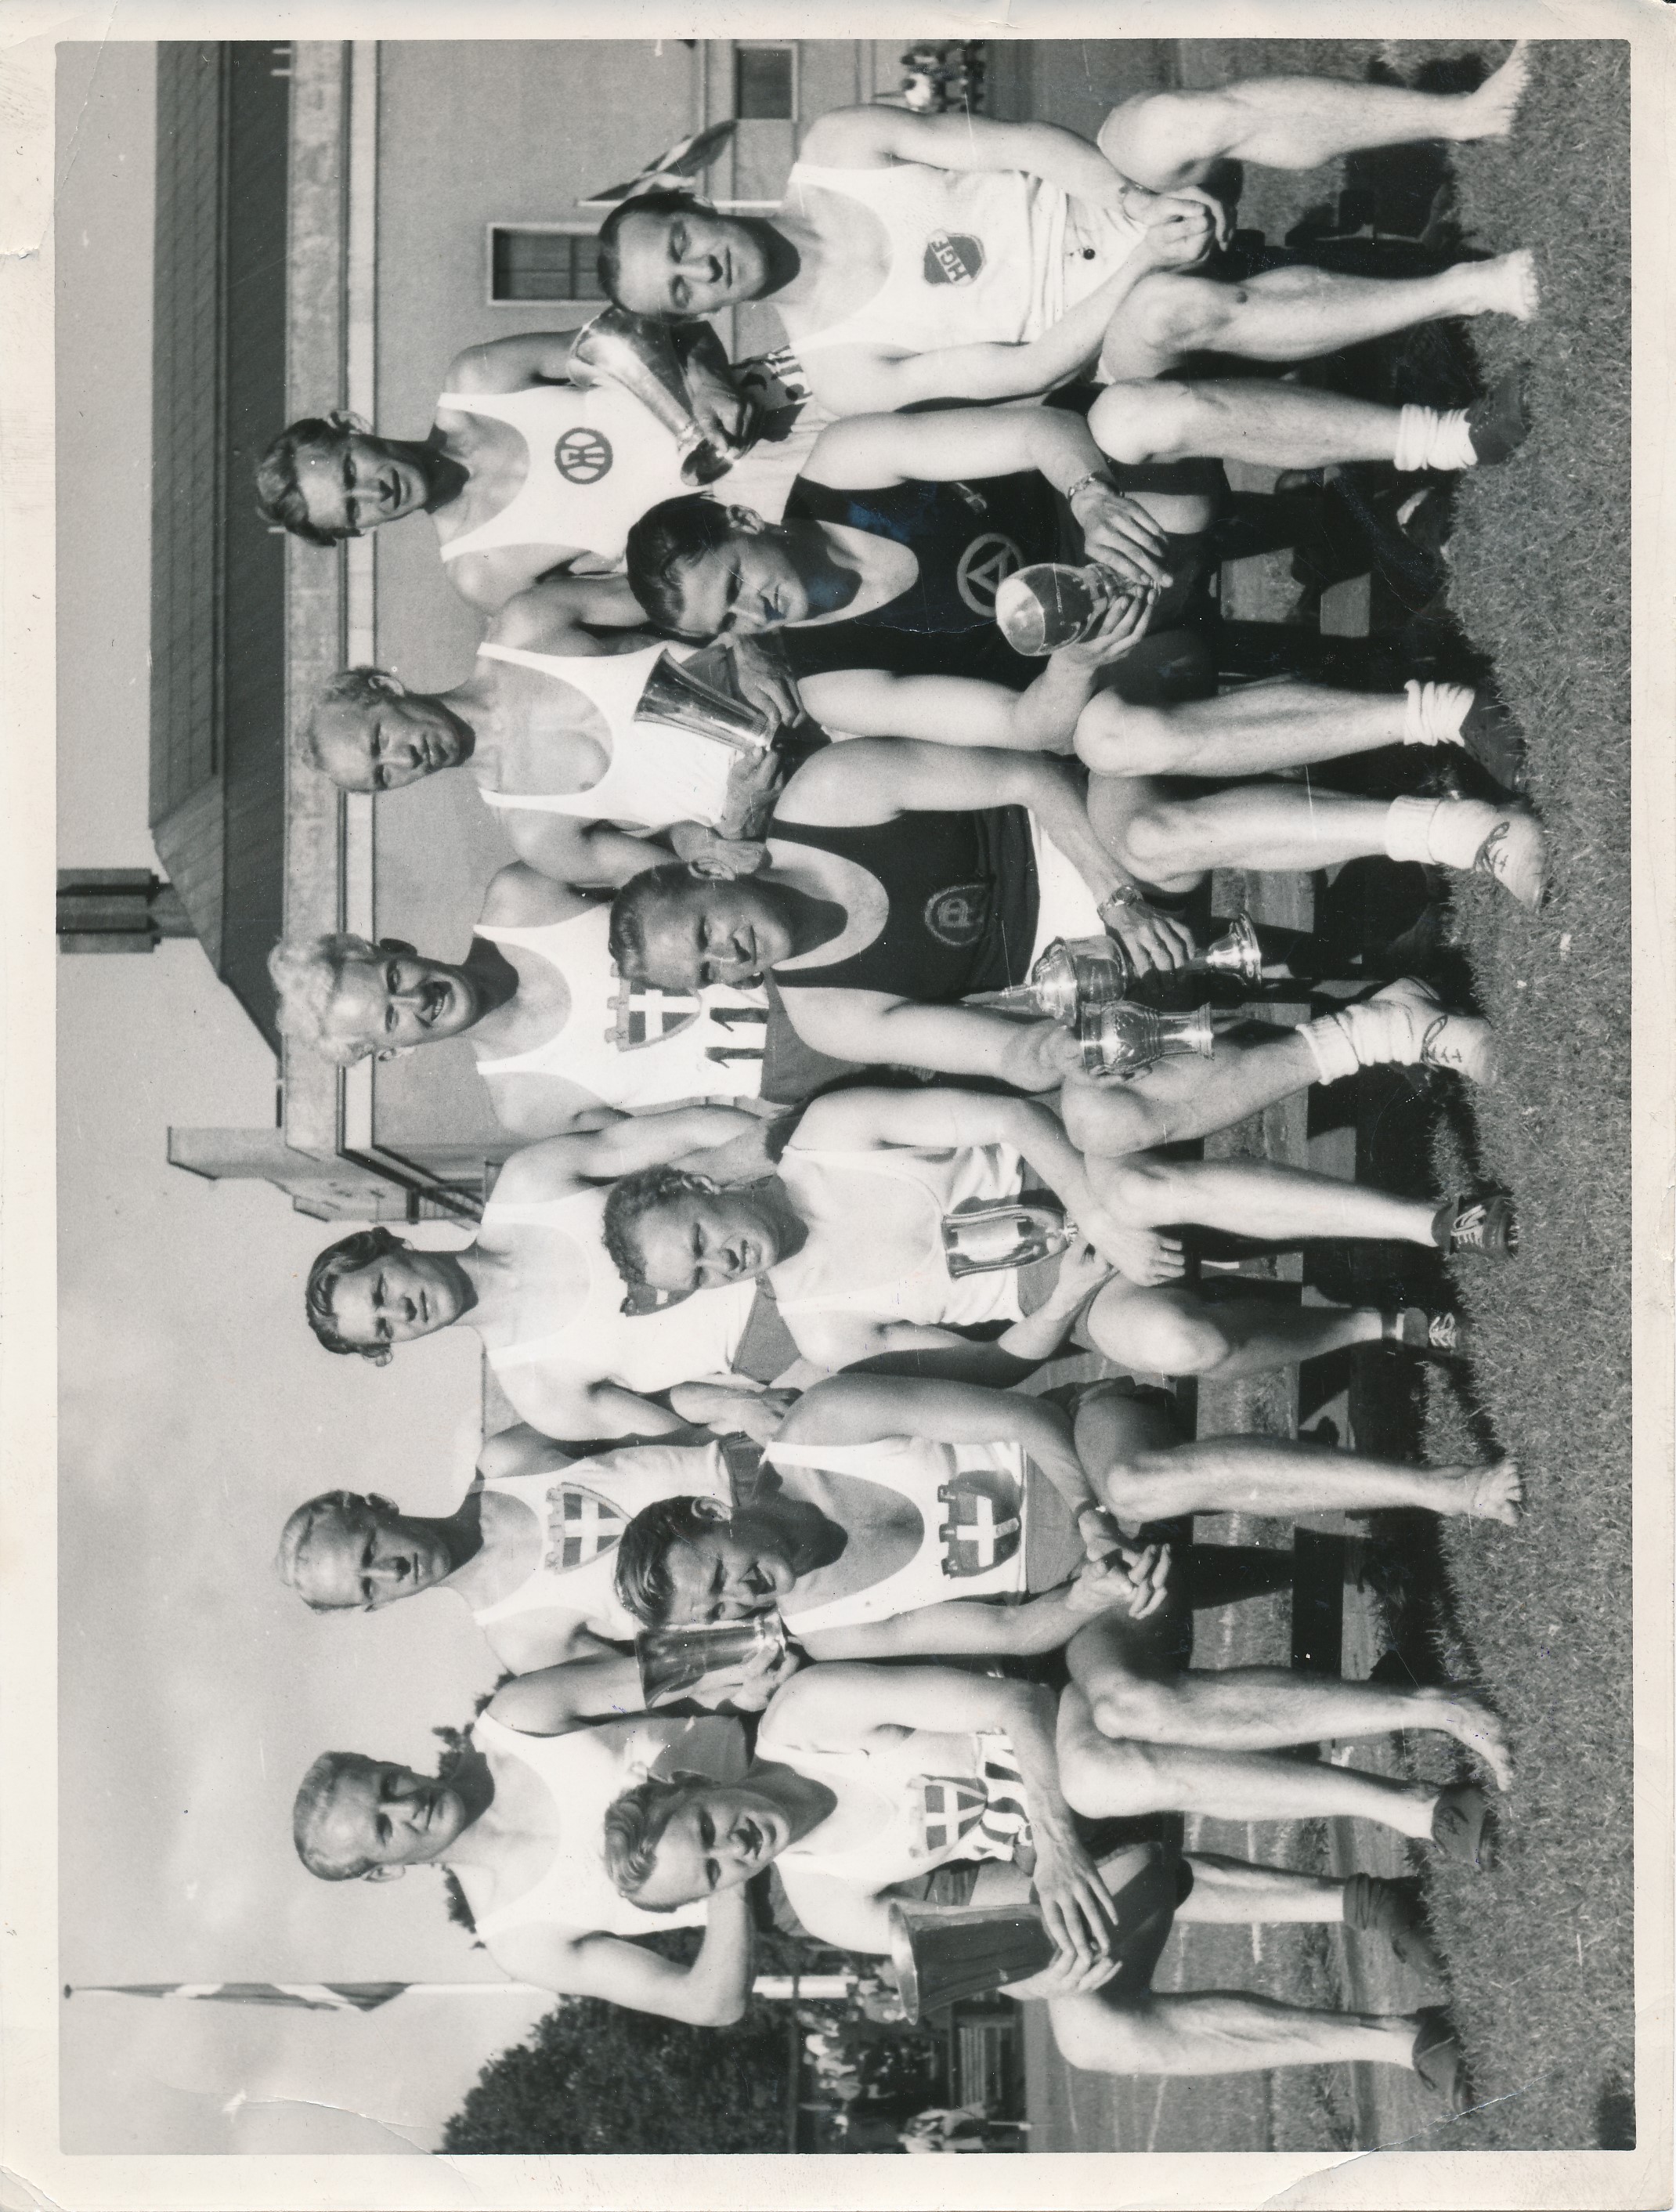 Atletikudøvere ved DM i atletik 1947.